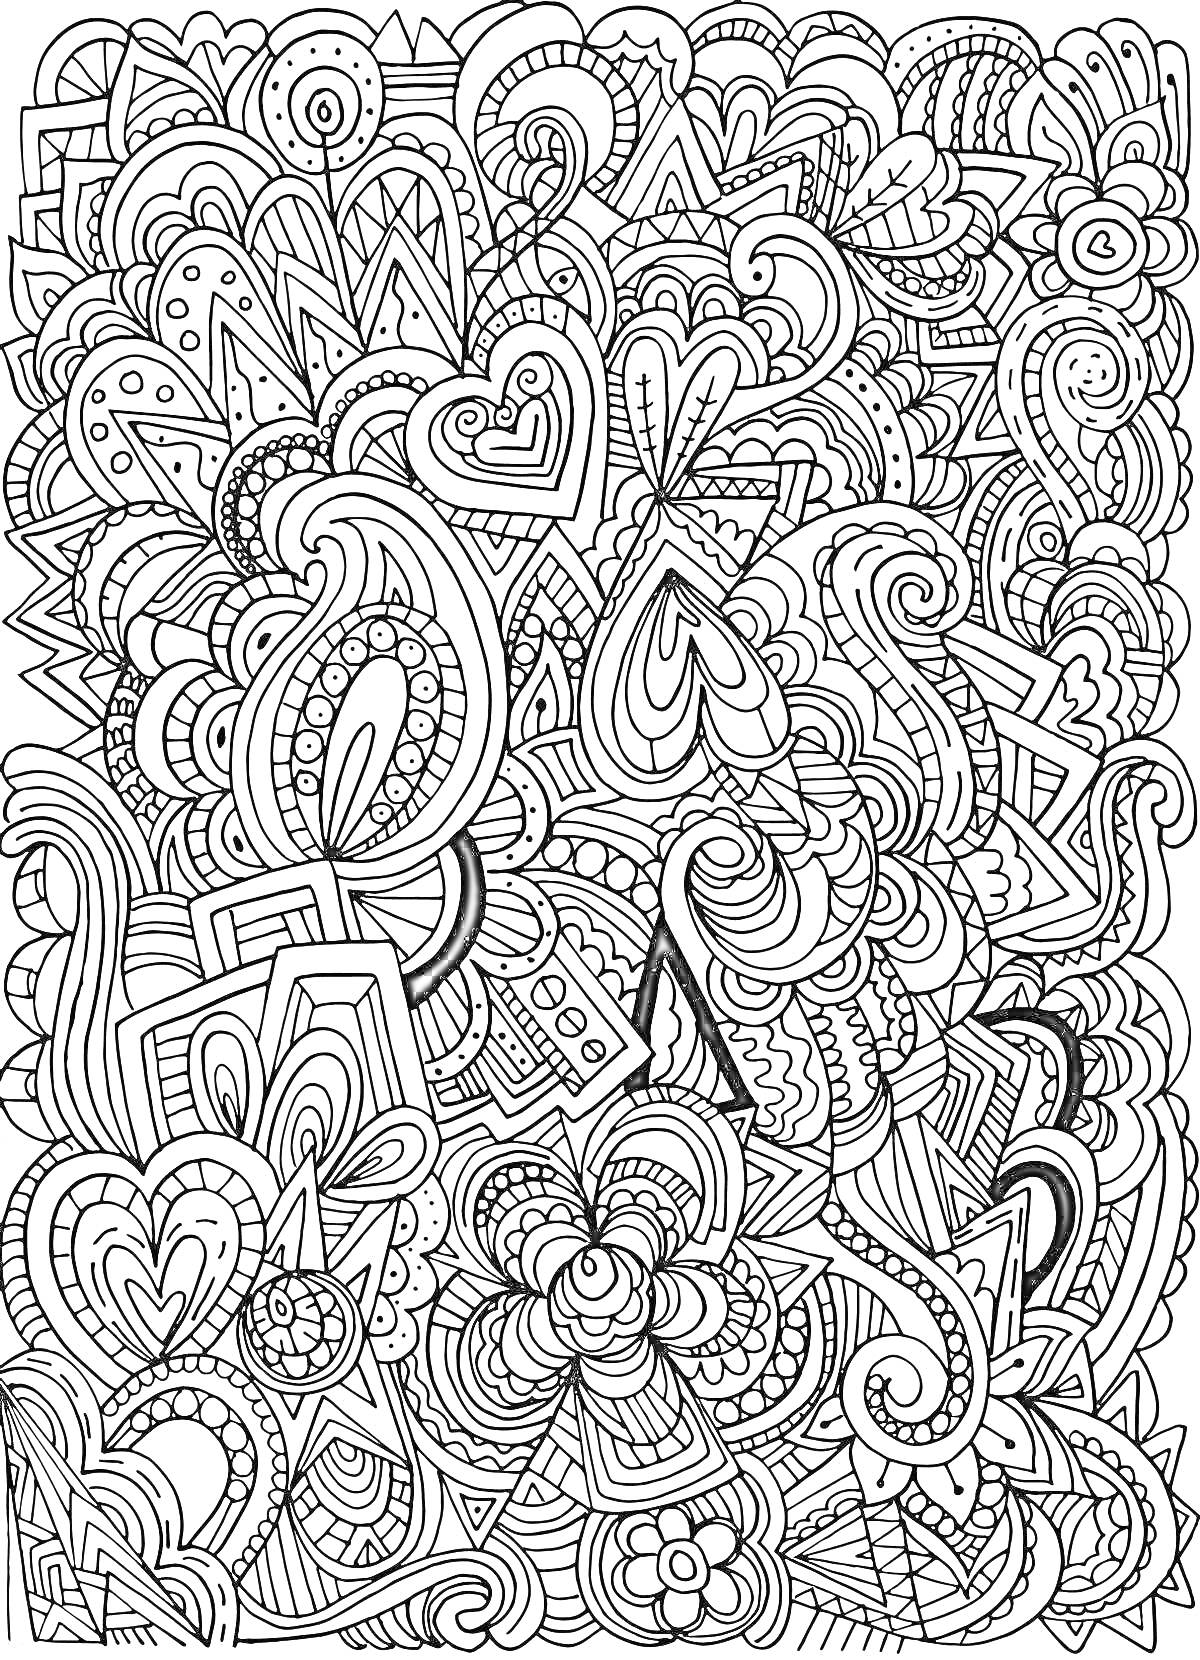 Раскраска Воображаемый узор с сердцами, завитками и цветочными элементами